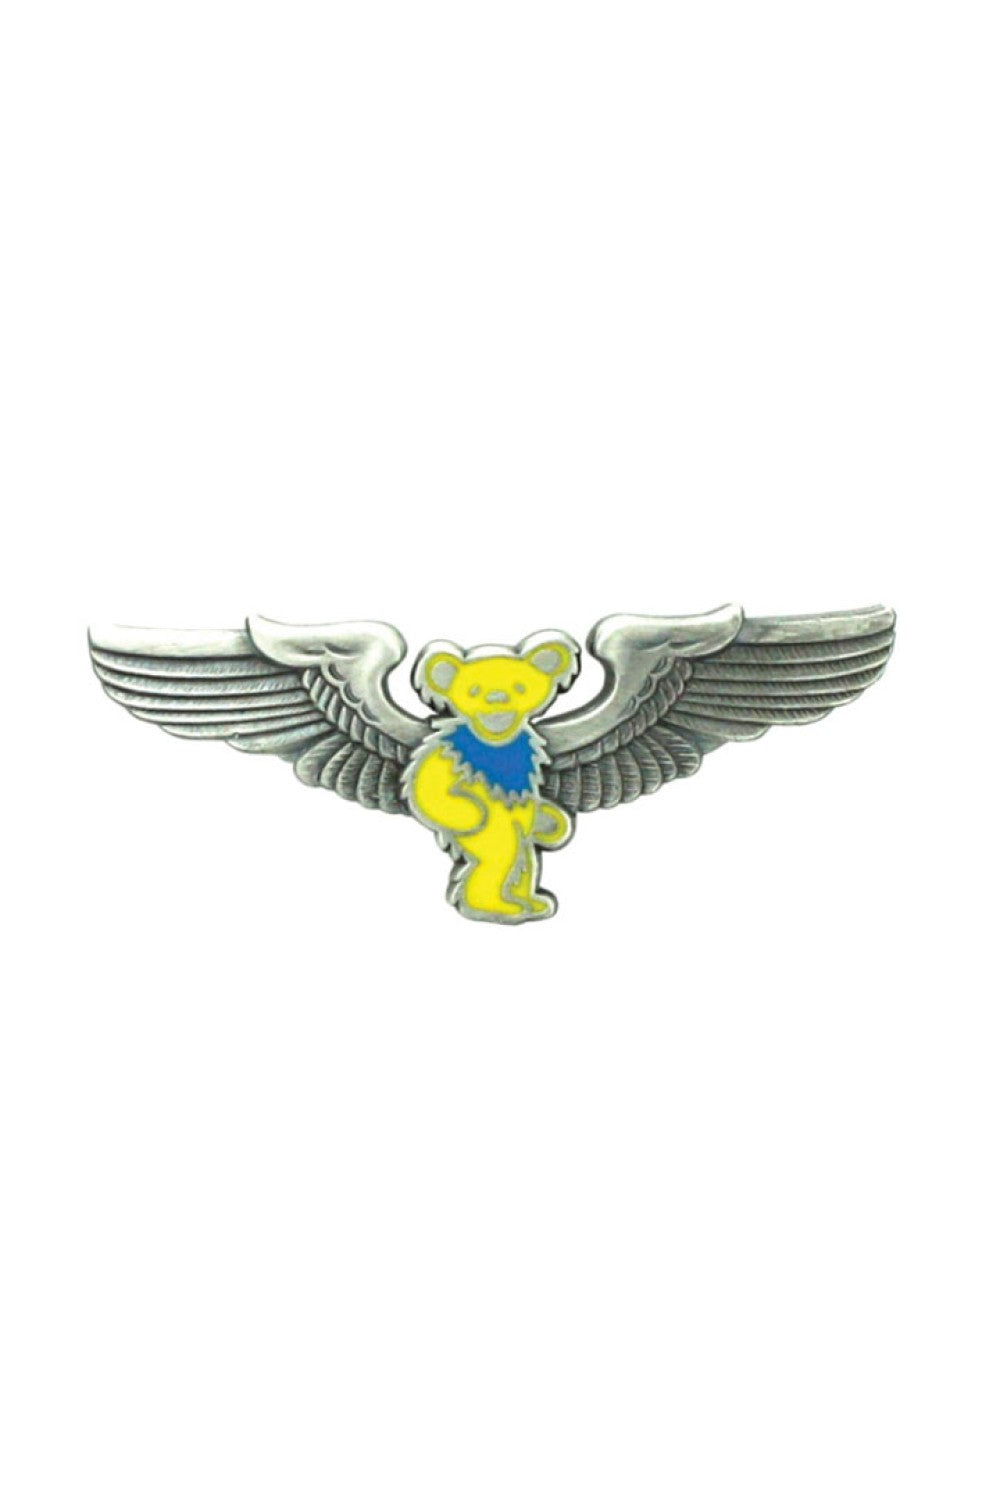 Grateful Dead Yellow Bear Pilot Pin Rockwings - eDeadShop